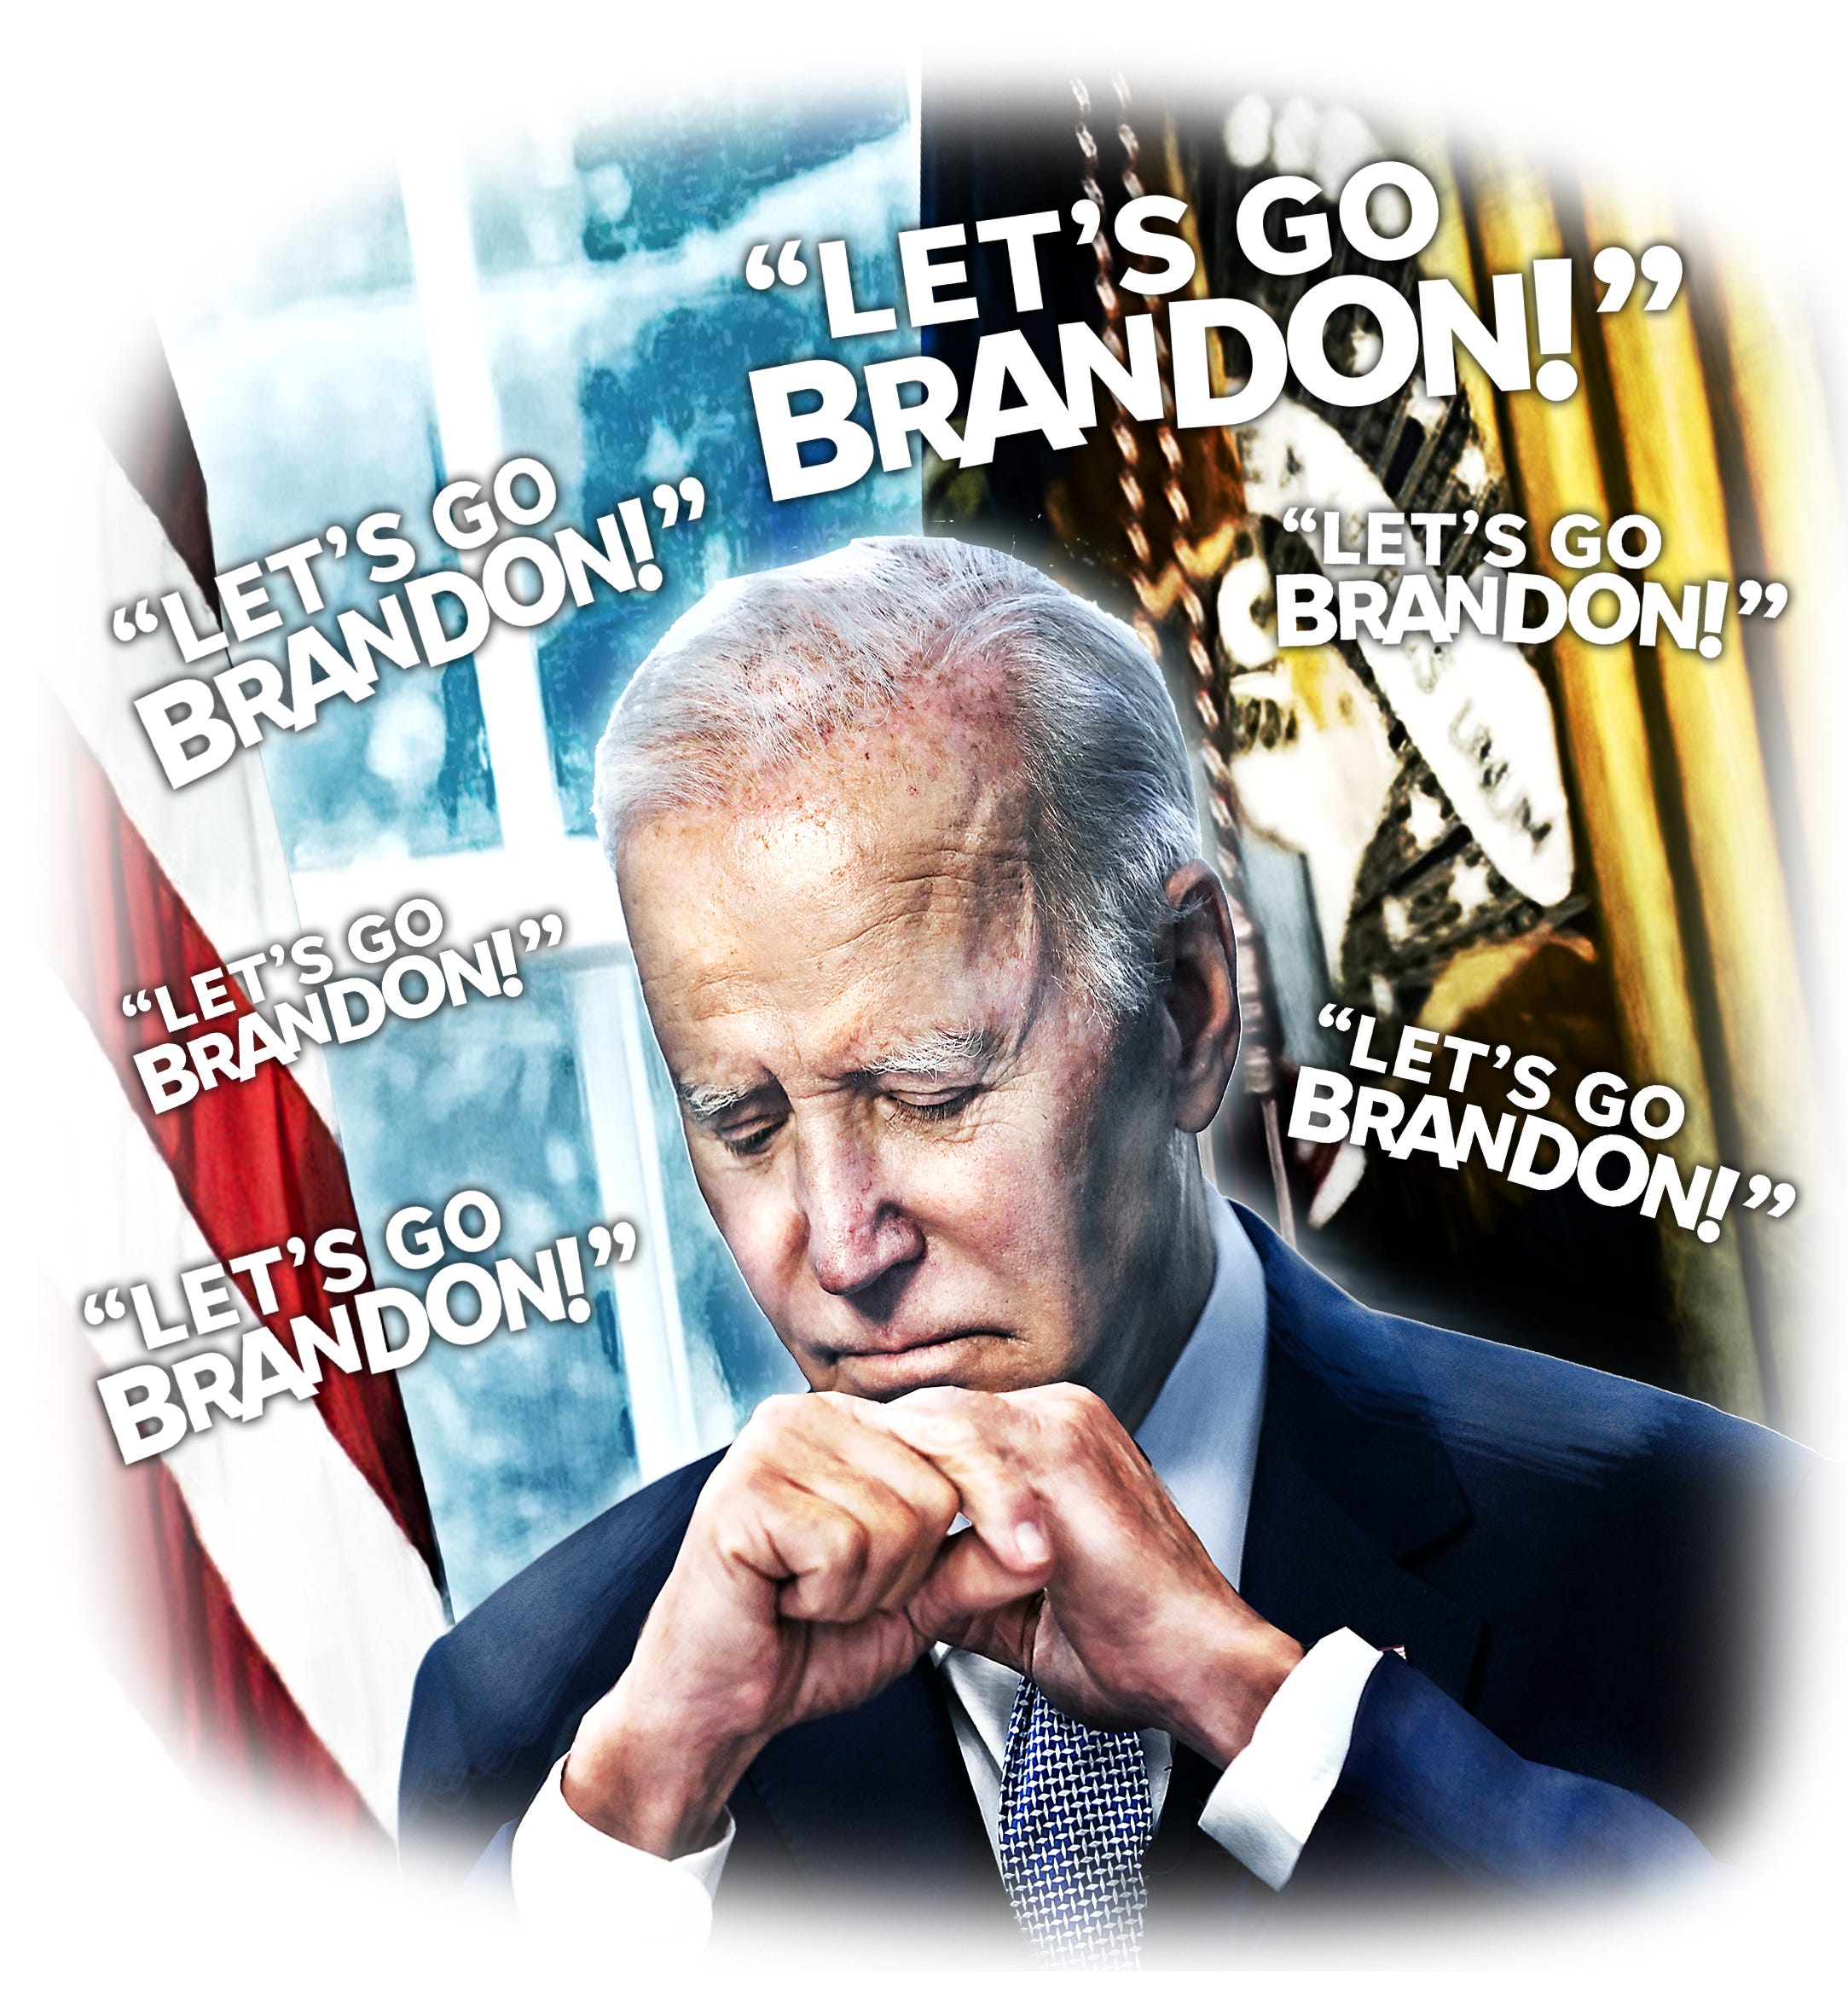 Let's go Brandon, a frase que se transformou num insulto a Biden